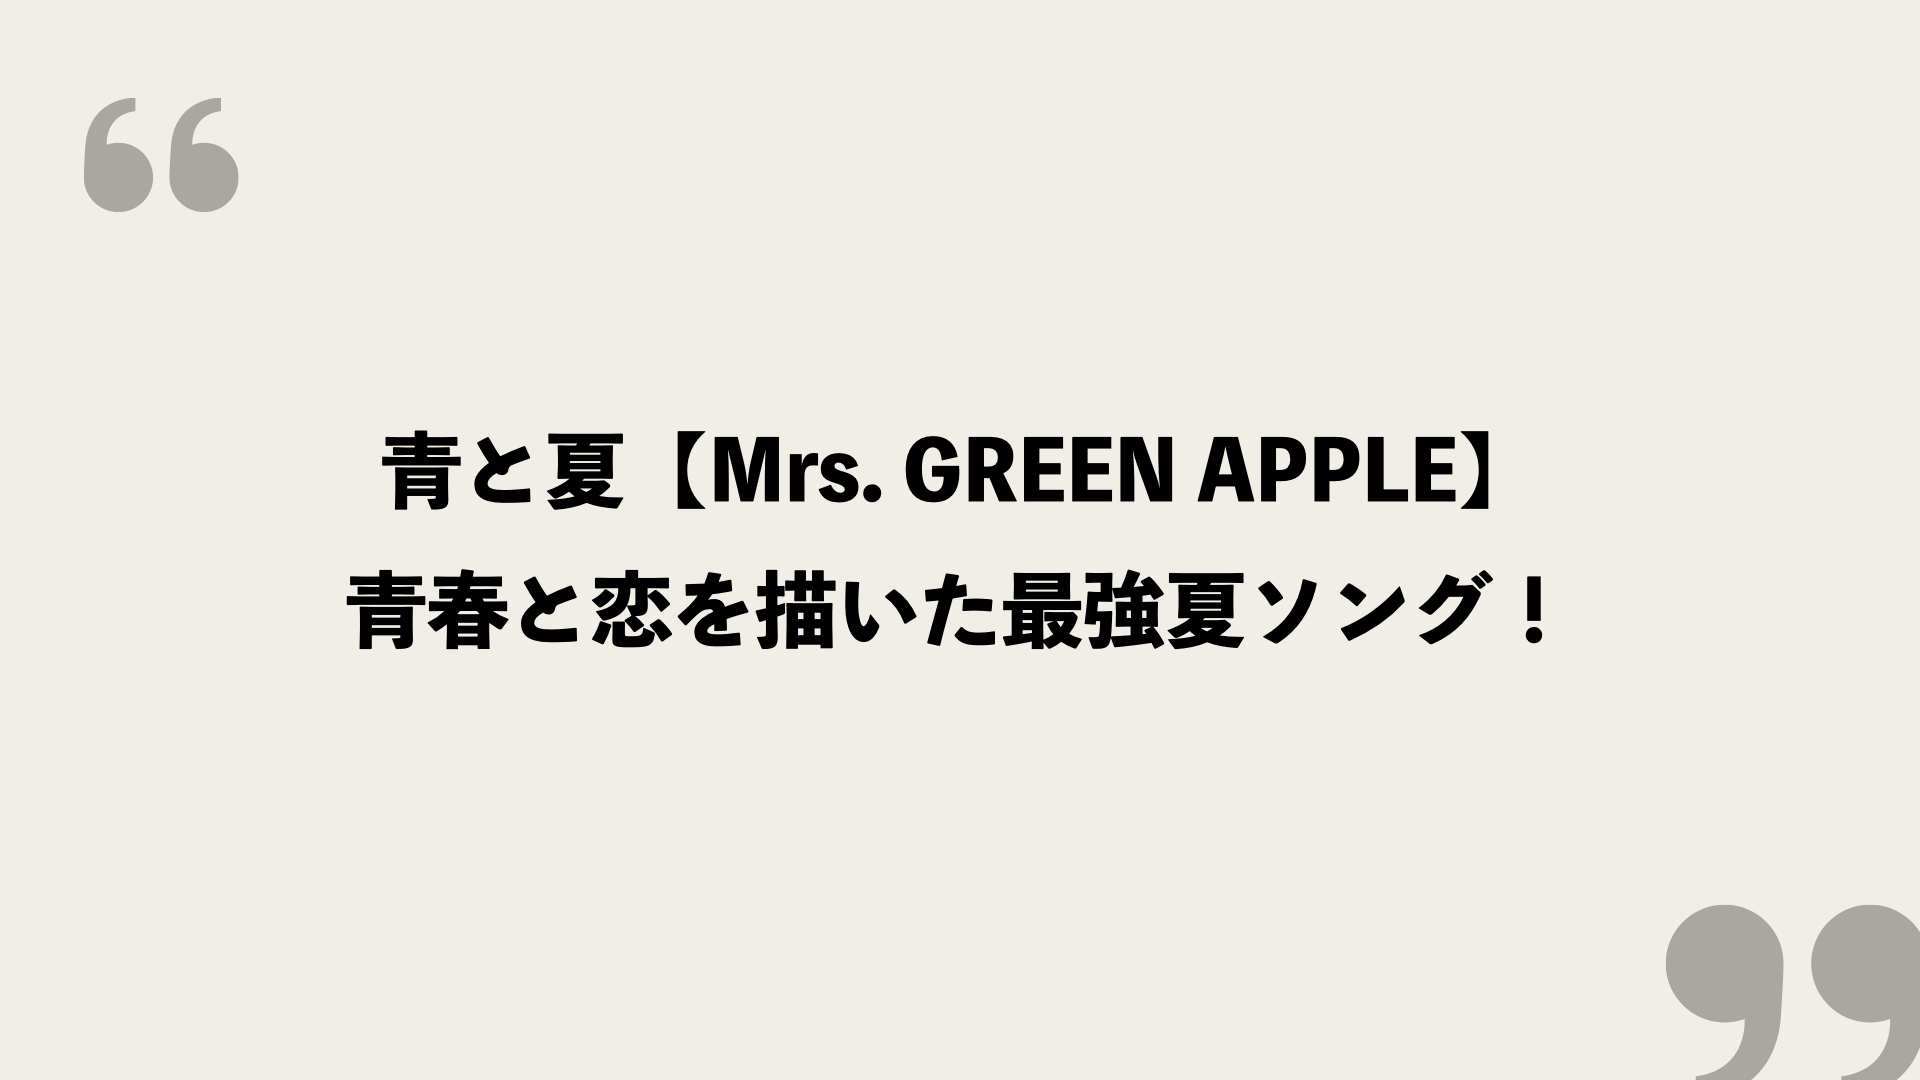 青と夏 Mrs Green Apple 歌詞の意味を考察 青春と恋を描いた最強夏ソング Framu Media